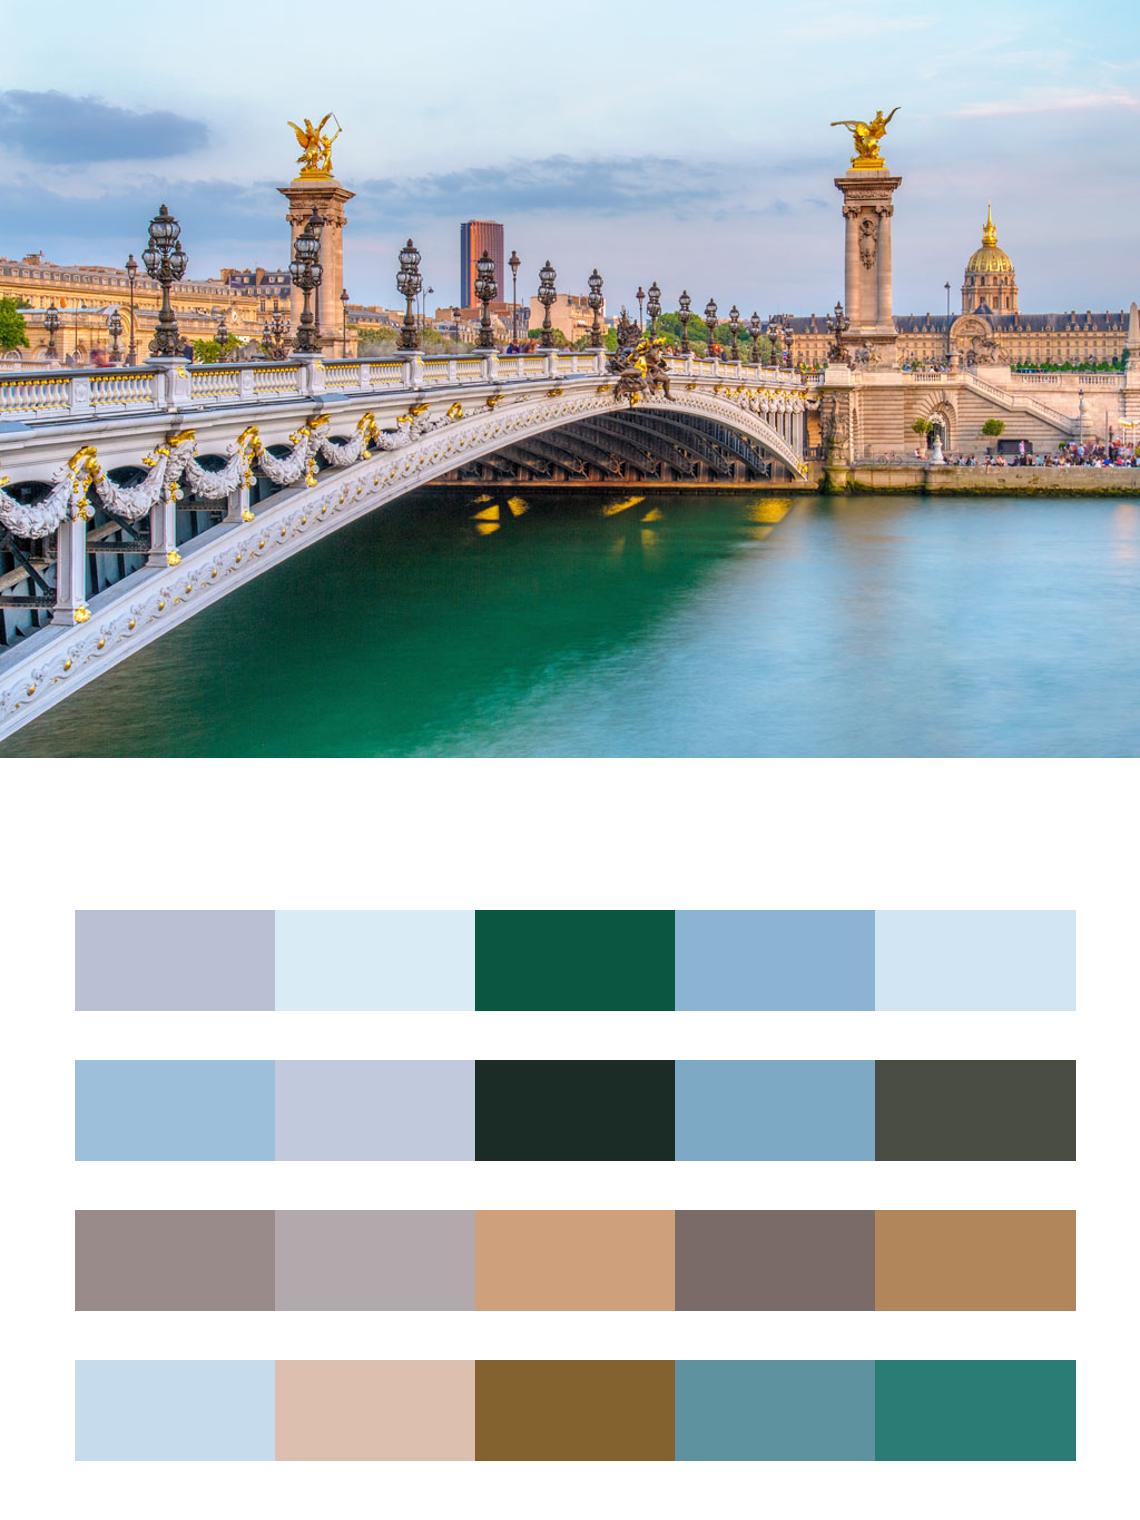 Мост в Париже через реку цвета